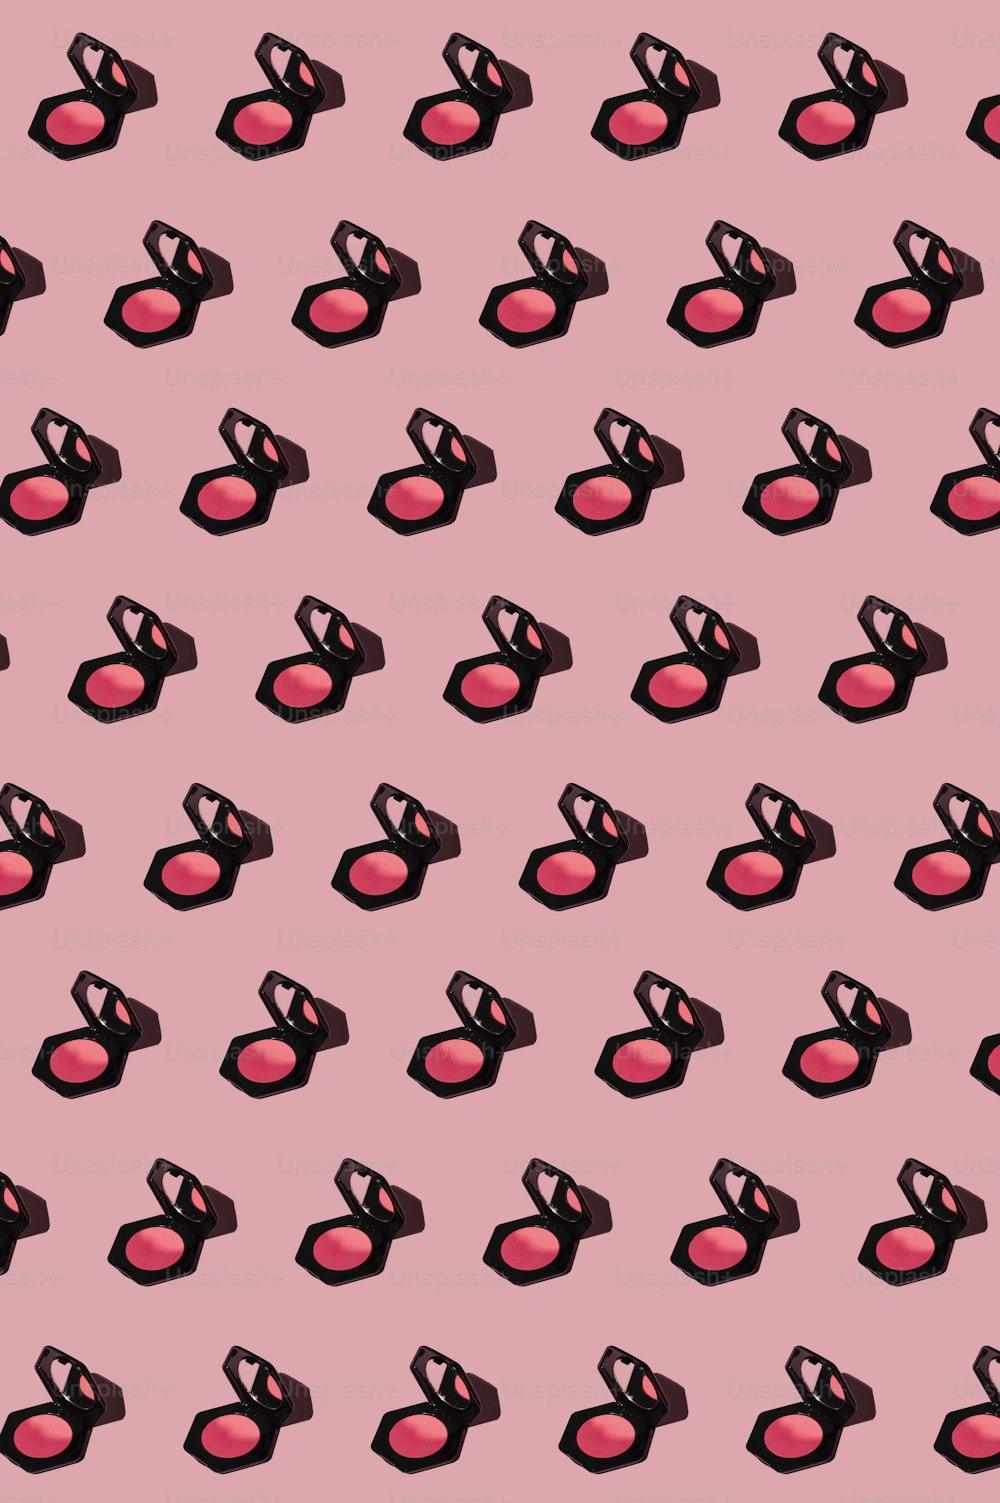 um fundo rosa com um padrão de batom